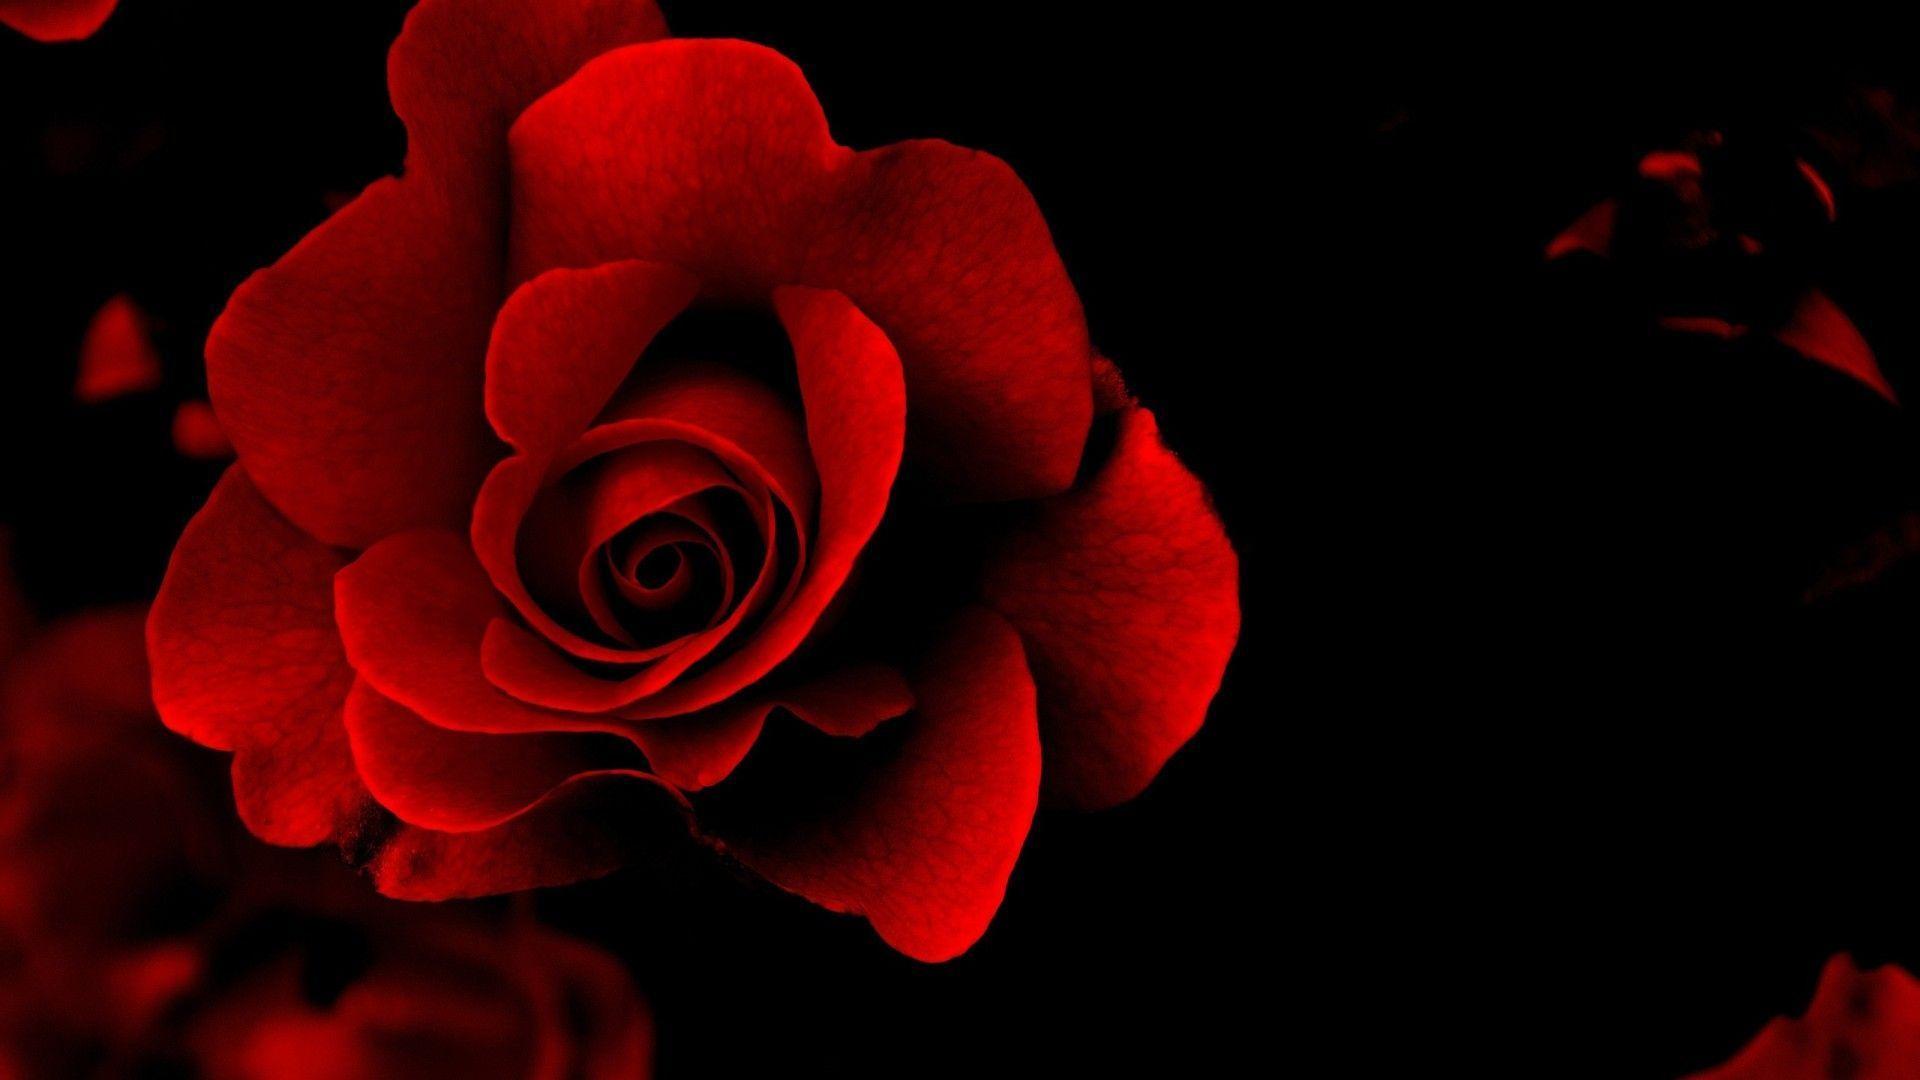 Red Roses Wallpaper For Desktop